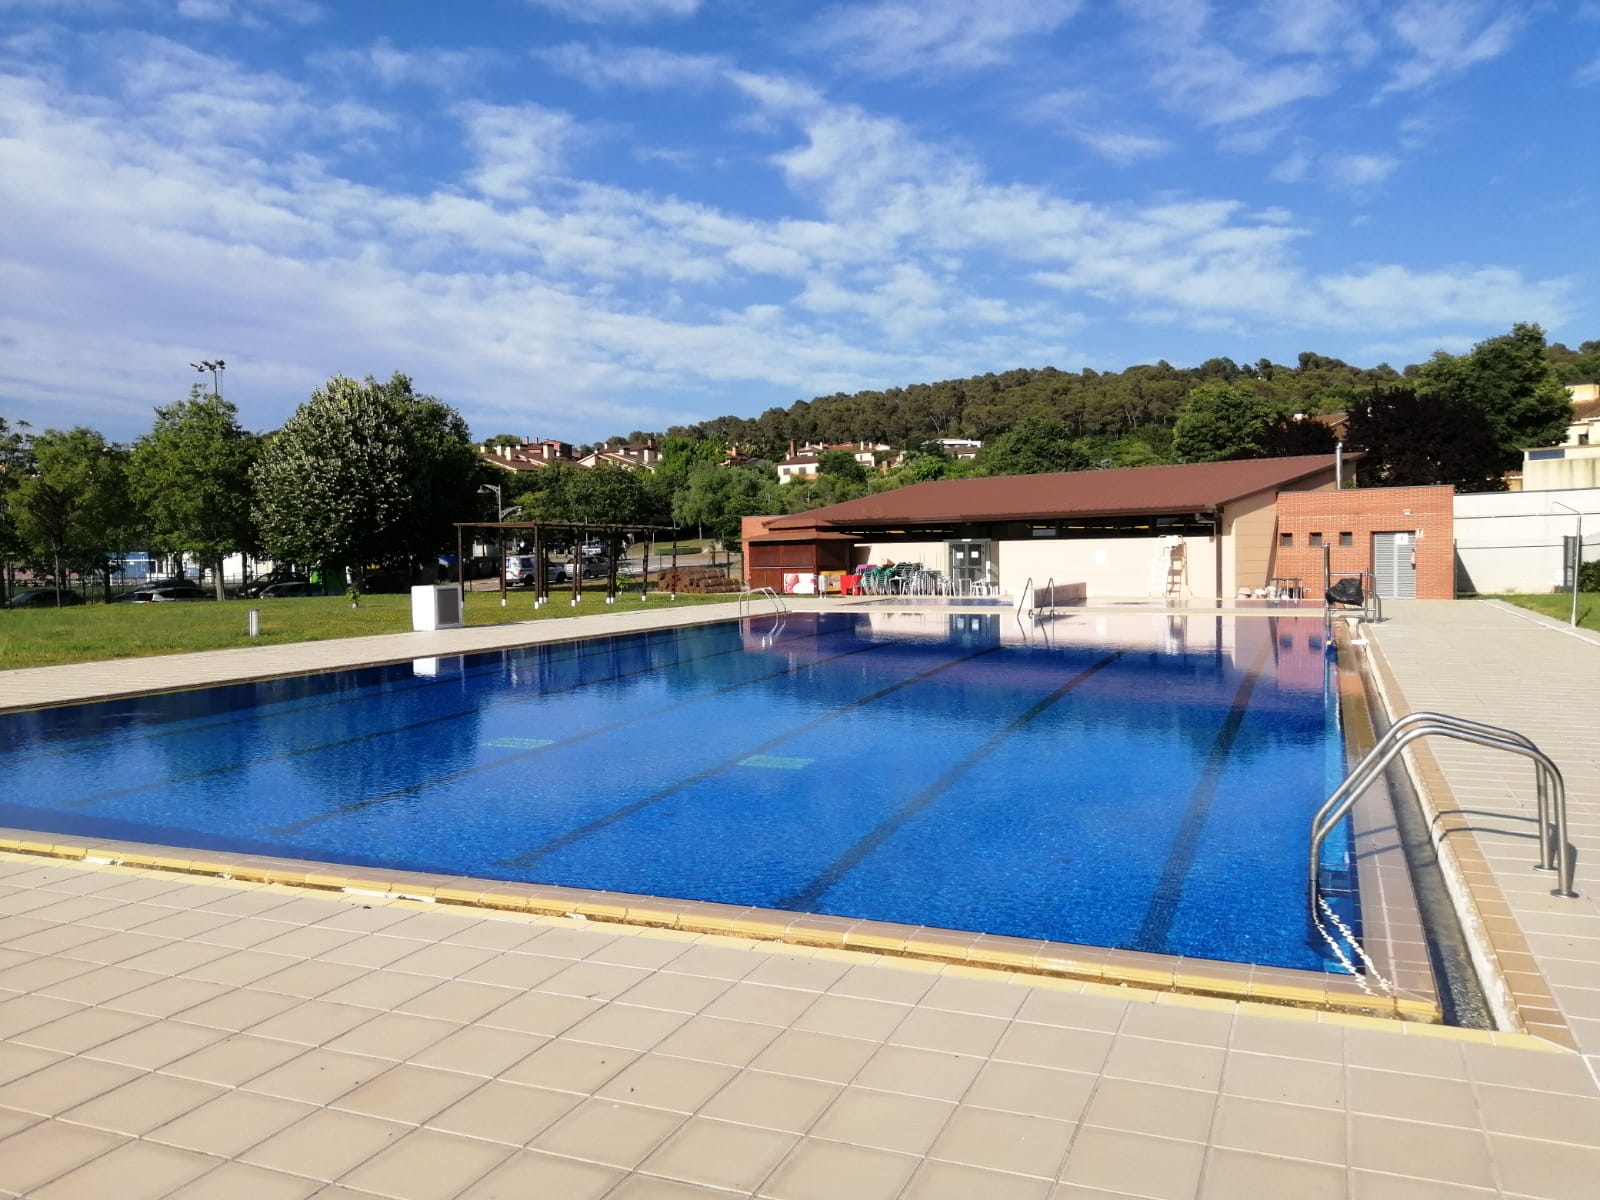 L'Ajuntament de la Roca del Vallès dona accés gratuït a les piscines d'estiu pels col·lectius vulnerables mentre duri l'onada de calor